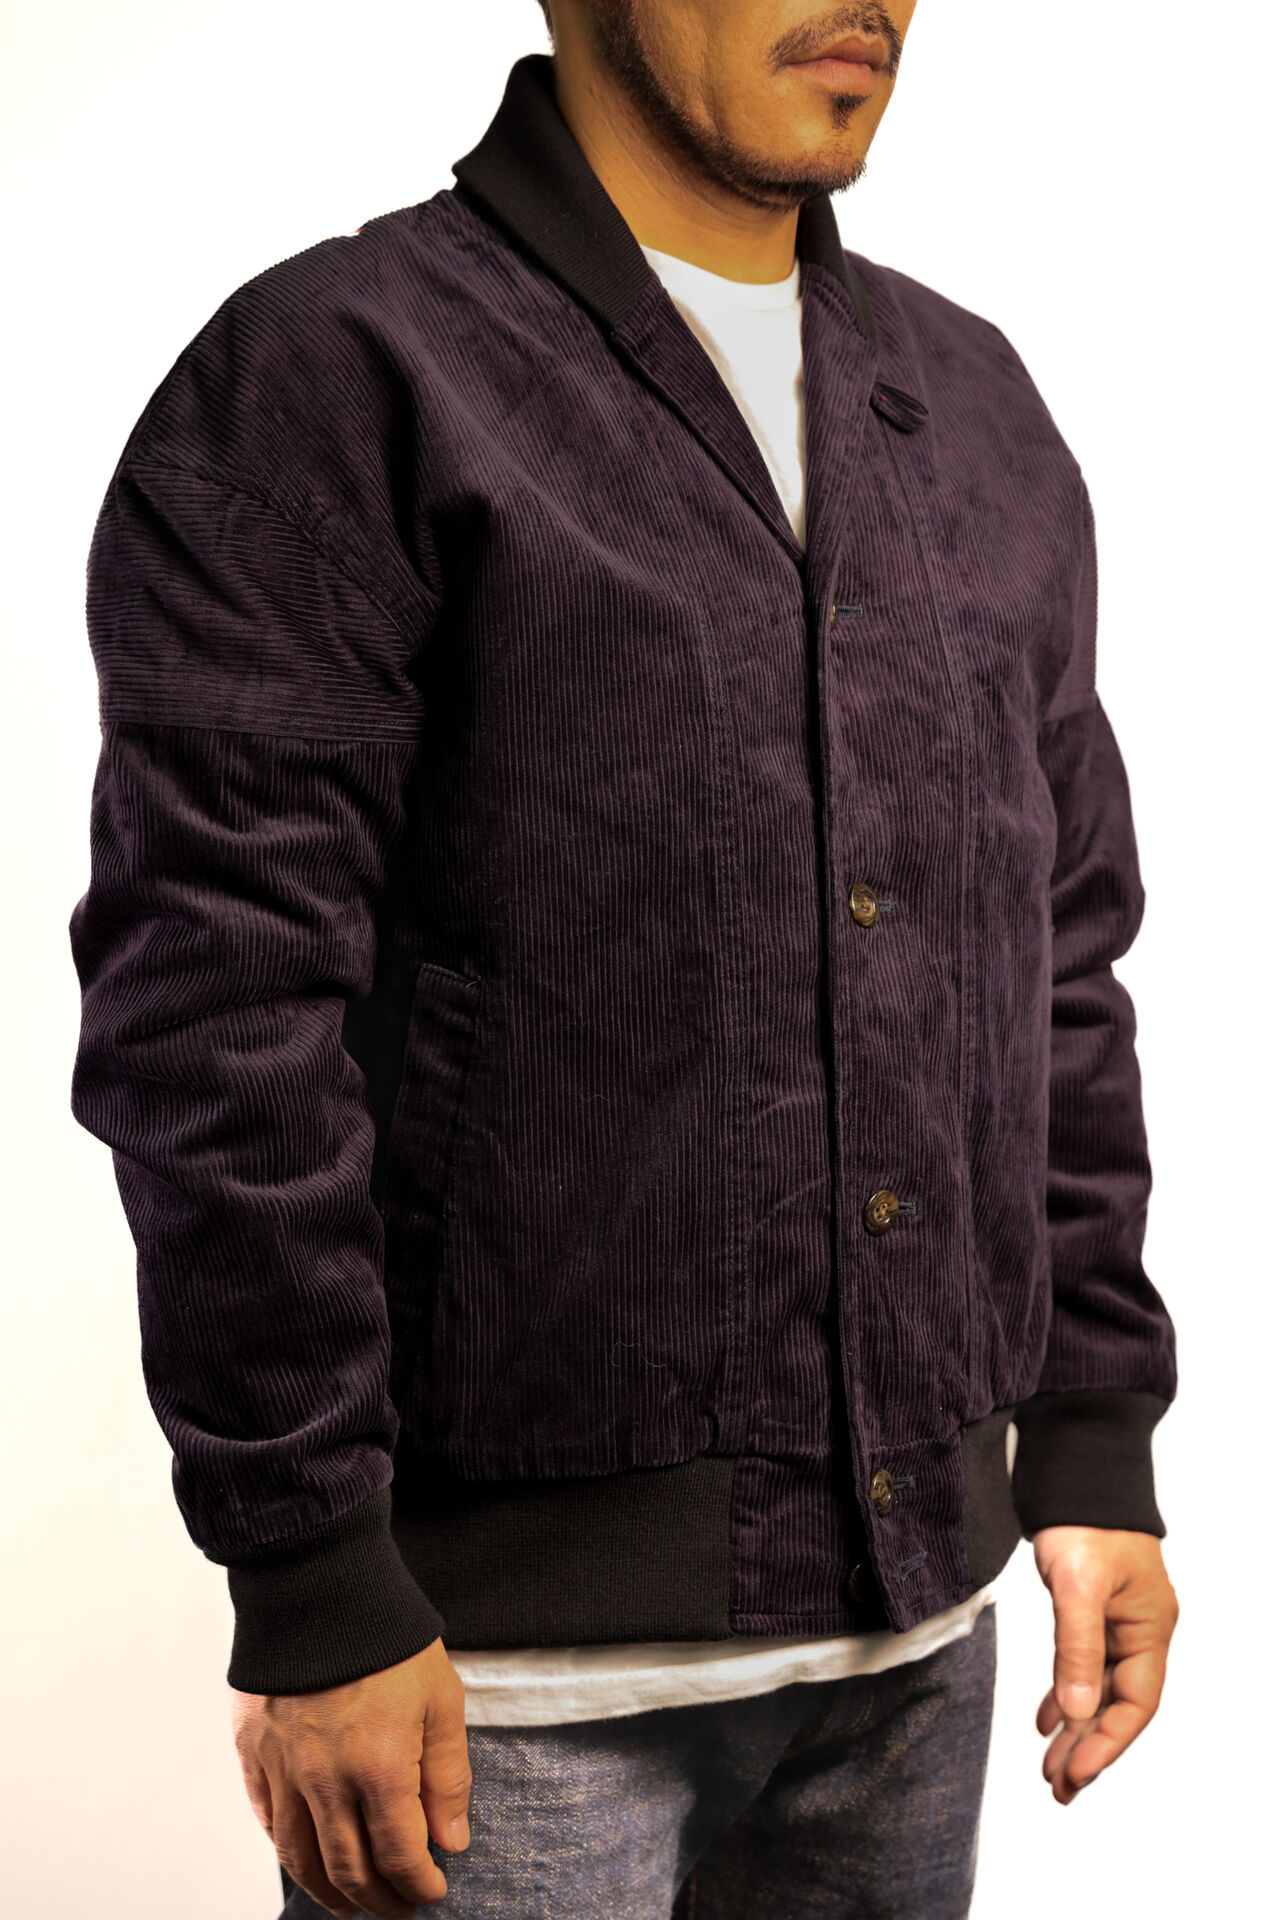 TNK501SZA "Sazanami" Corduroy Jacket (Indigo),, large image number 1